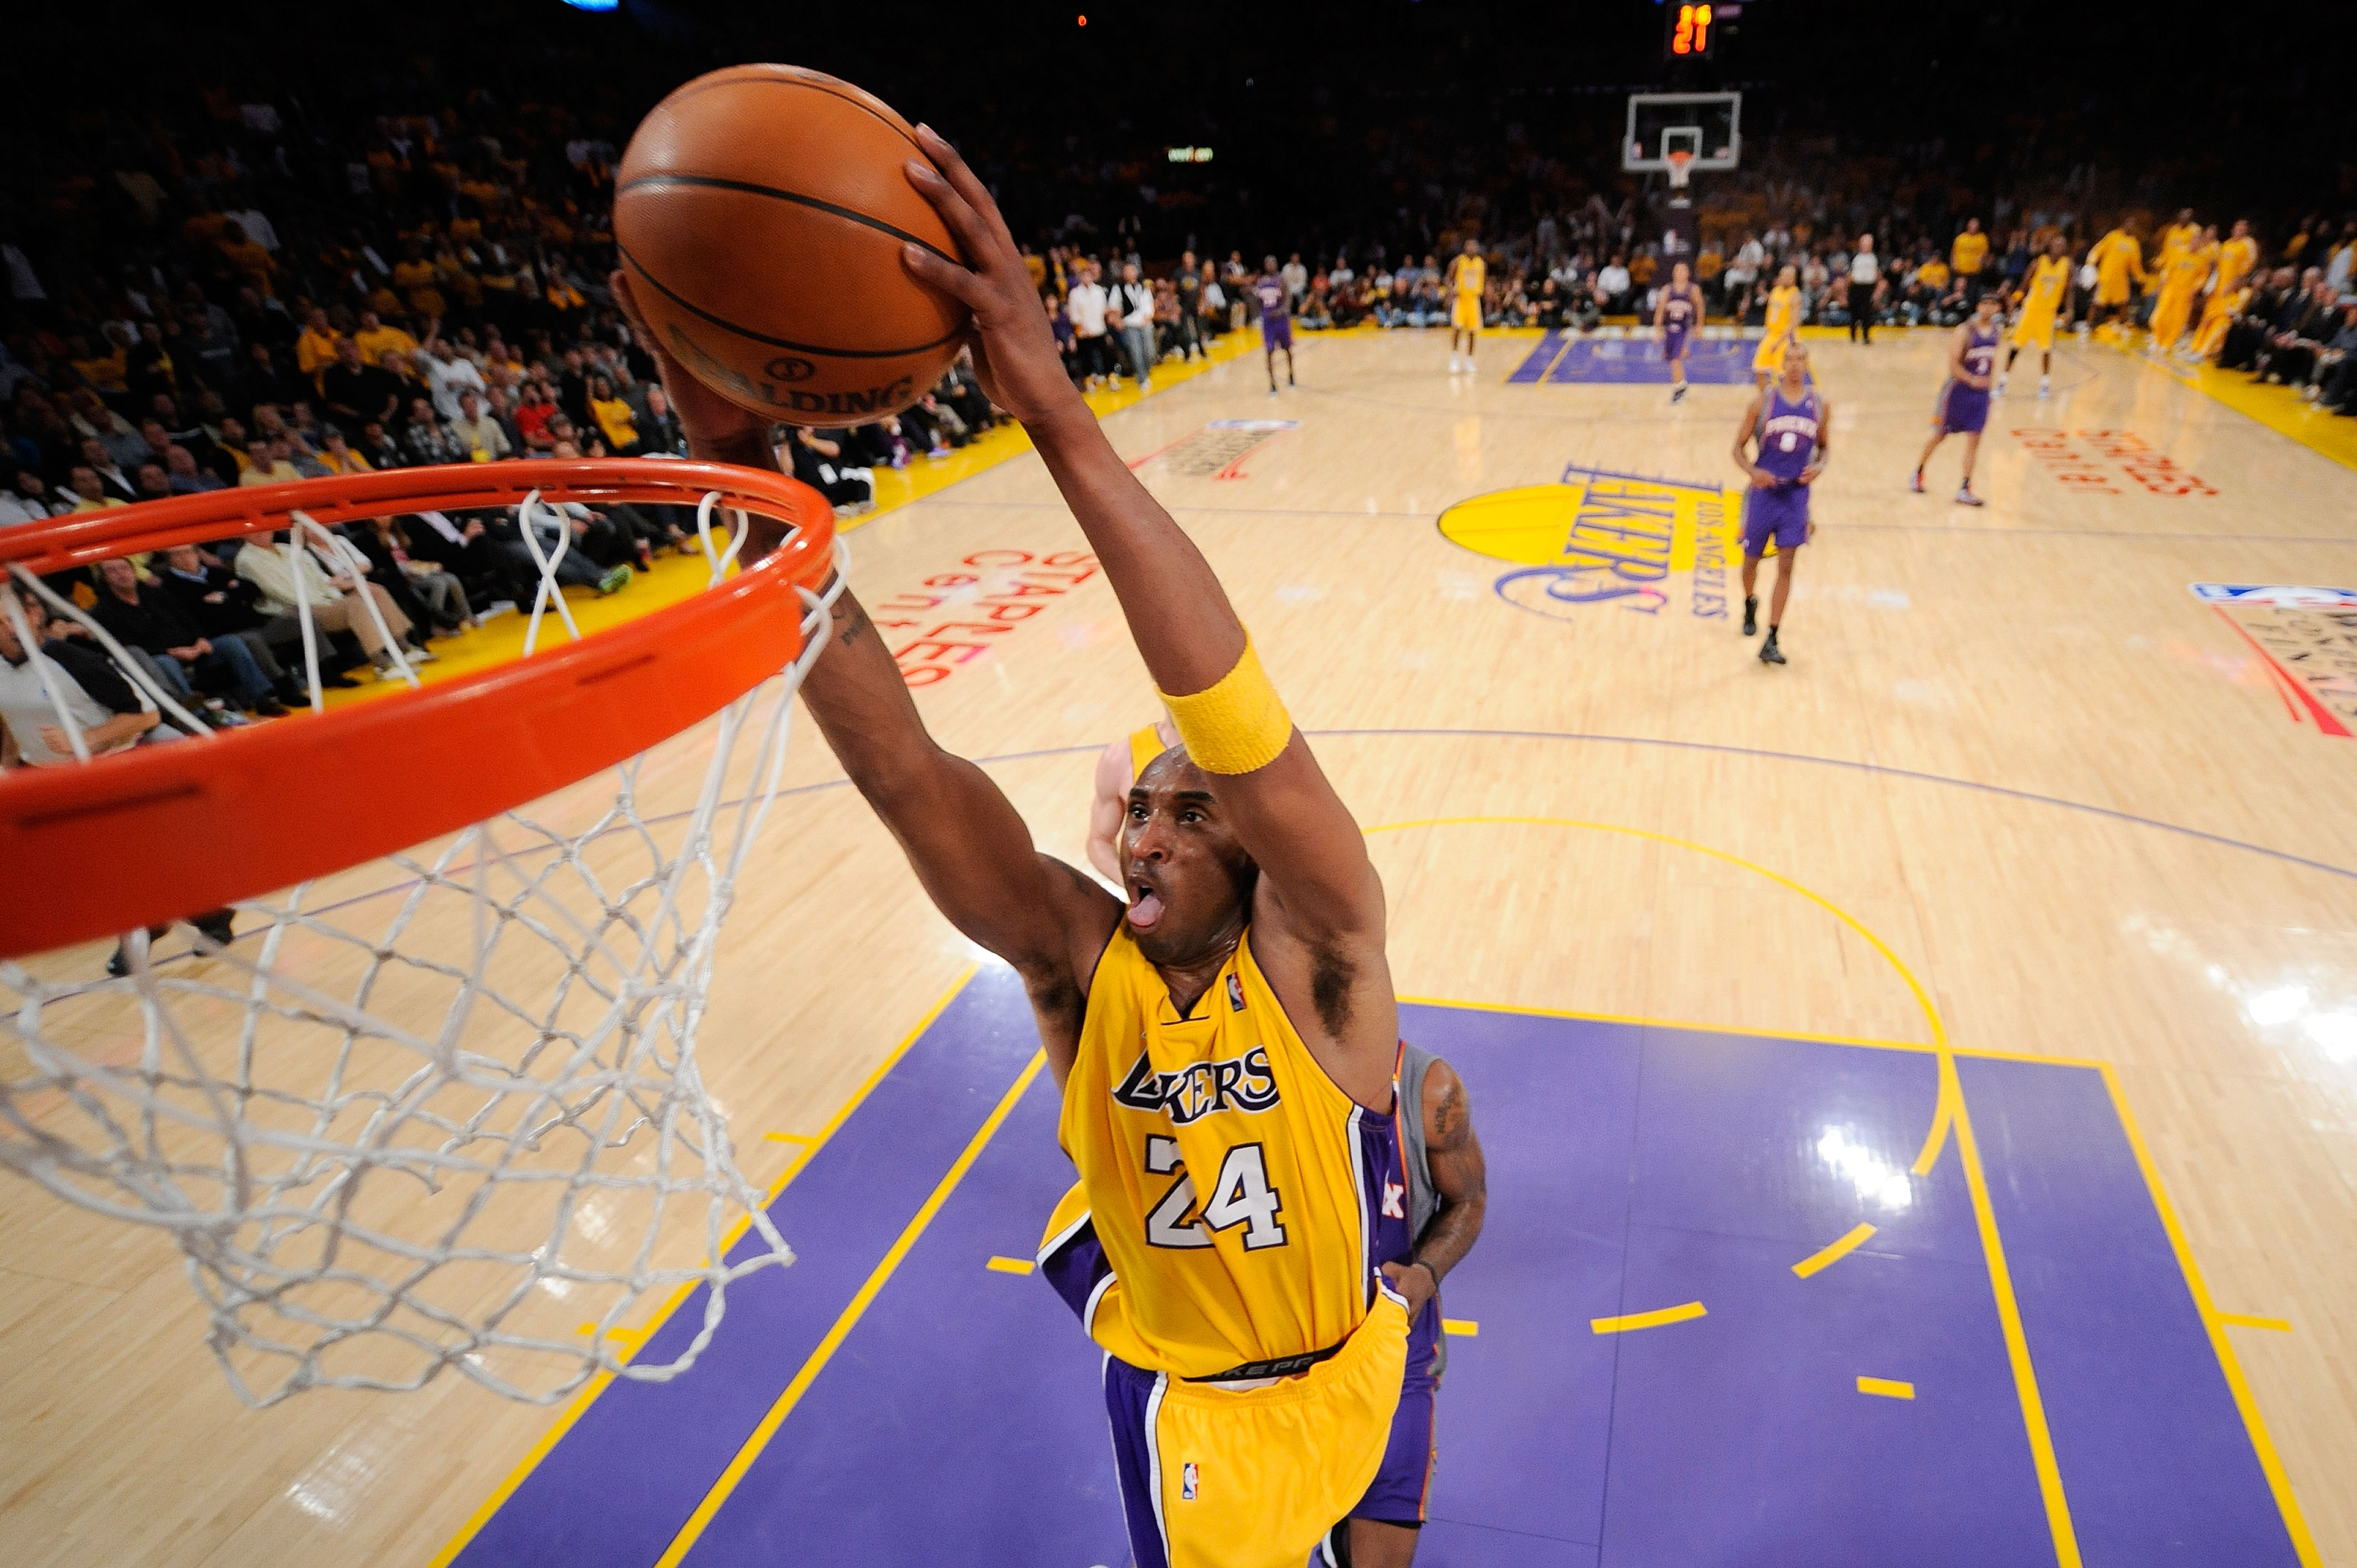 Kobe Bryant's Top 10 Plays Of His Career: 8 vs 24 